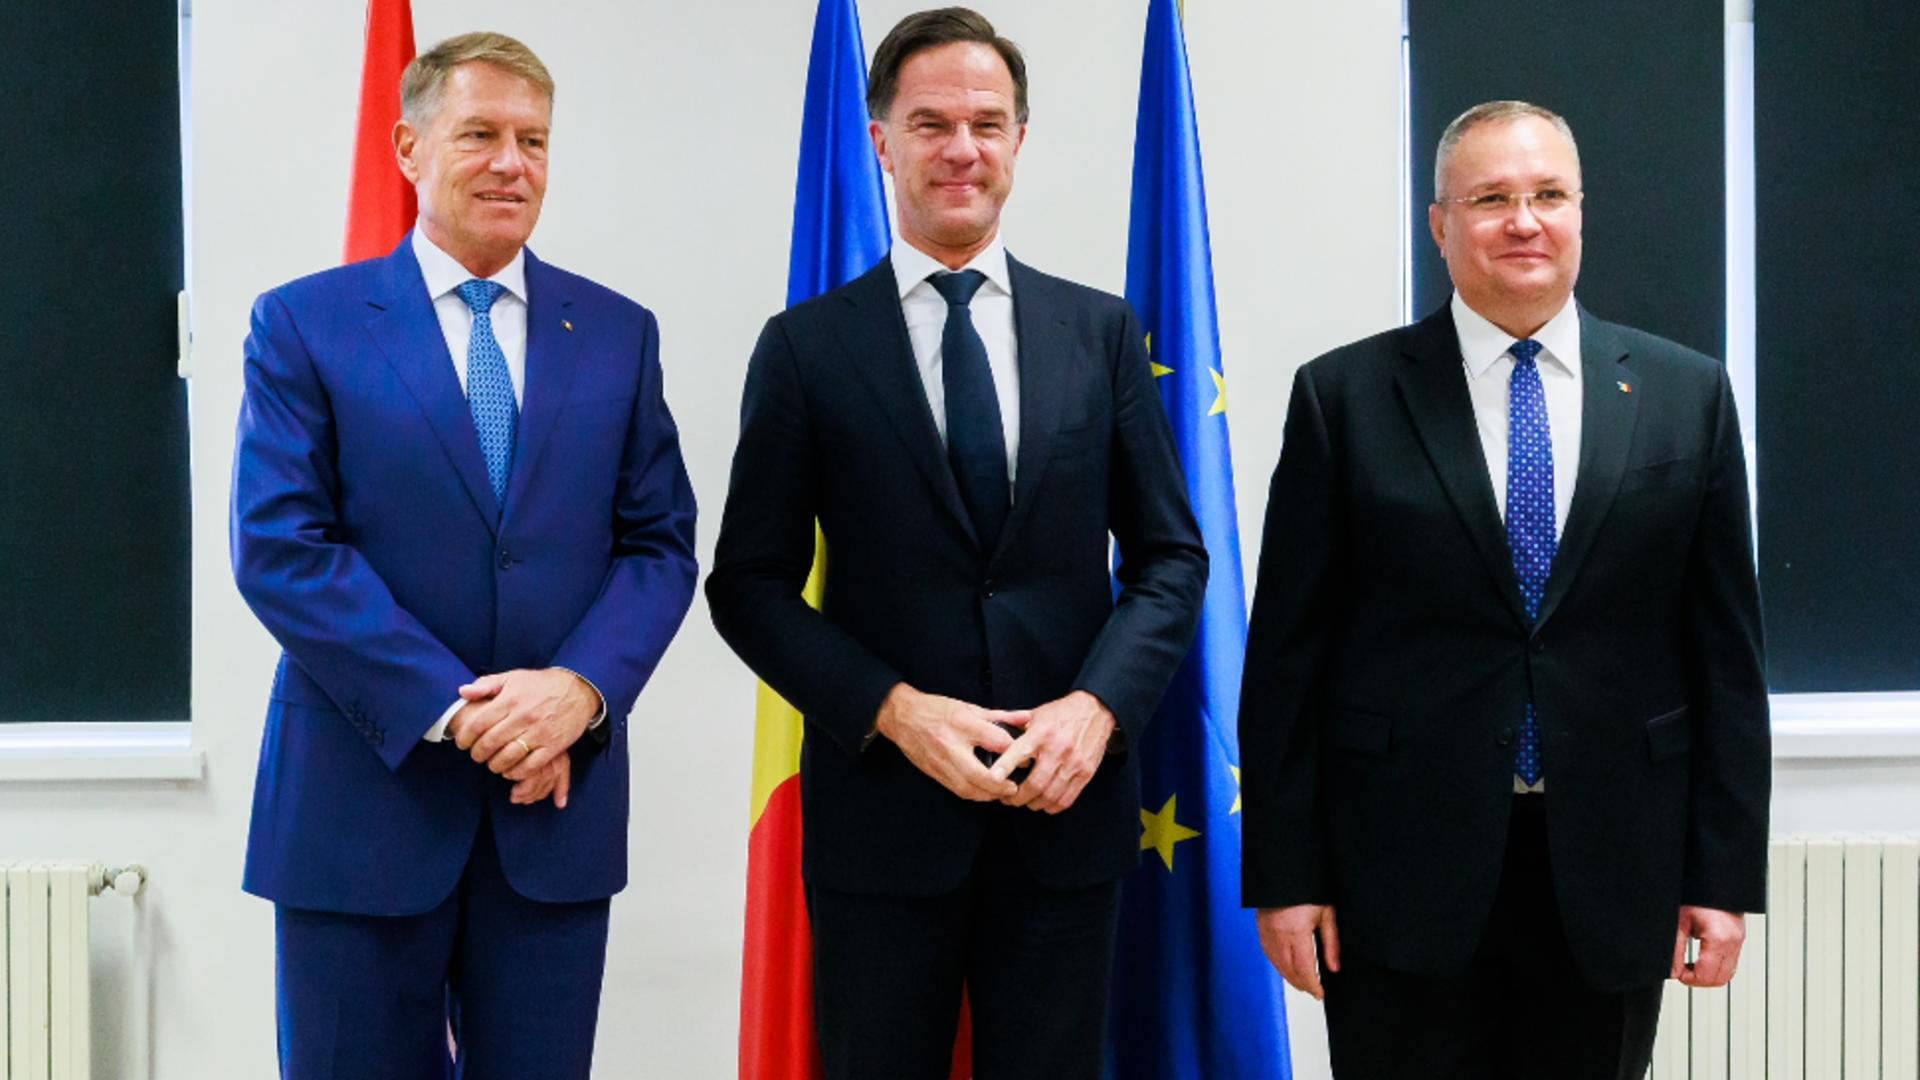 (VIDEO) Mark Rutte a ajuns la Cincu împreună cu președintele Iohannis și cu premierul Ciucă